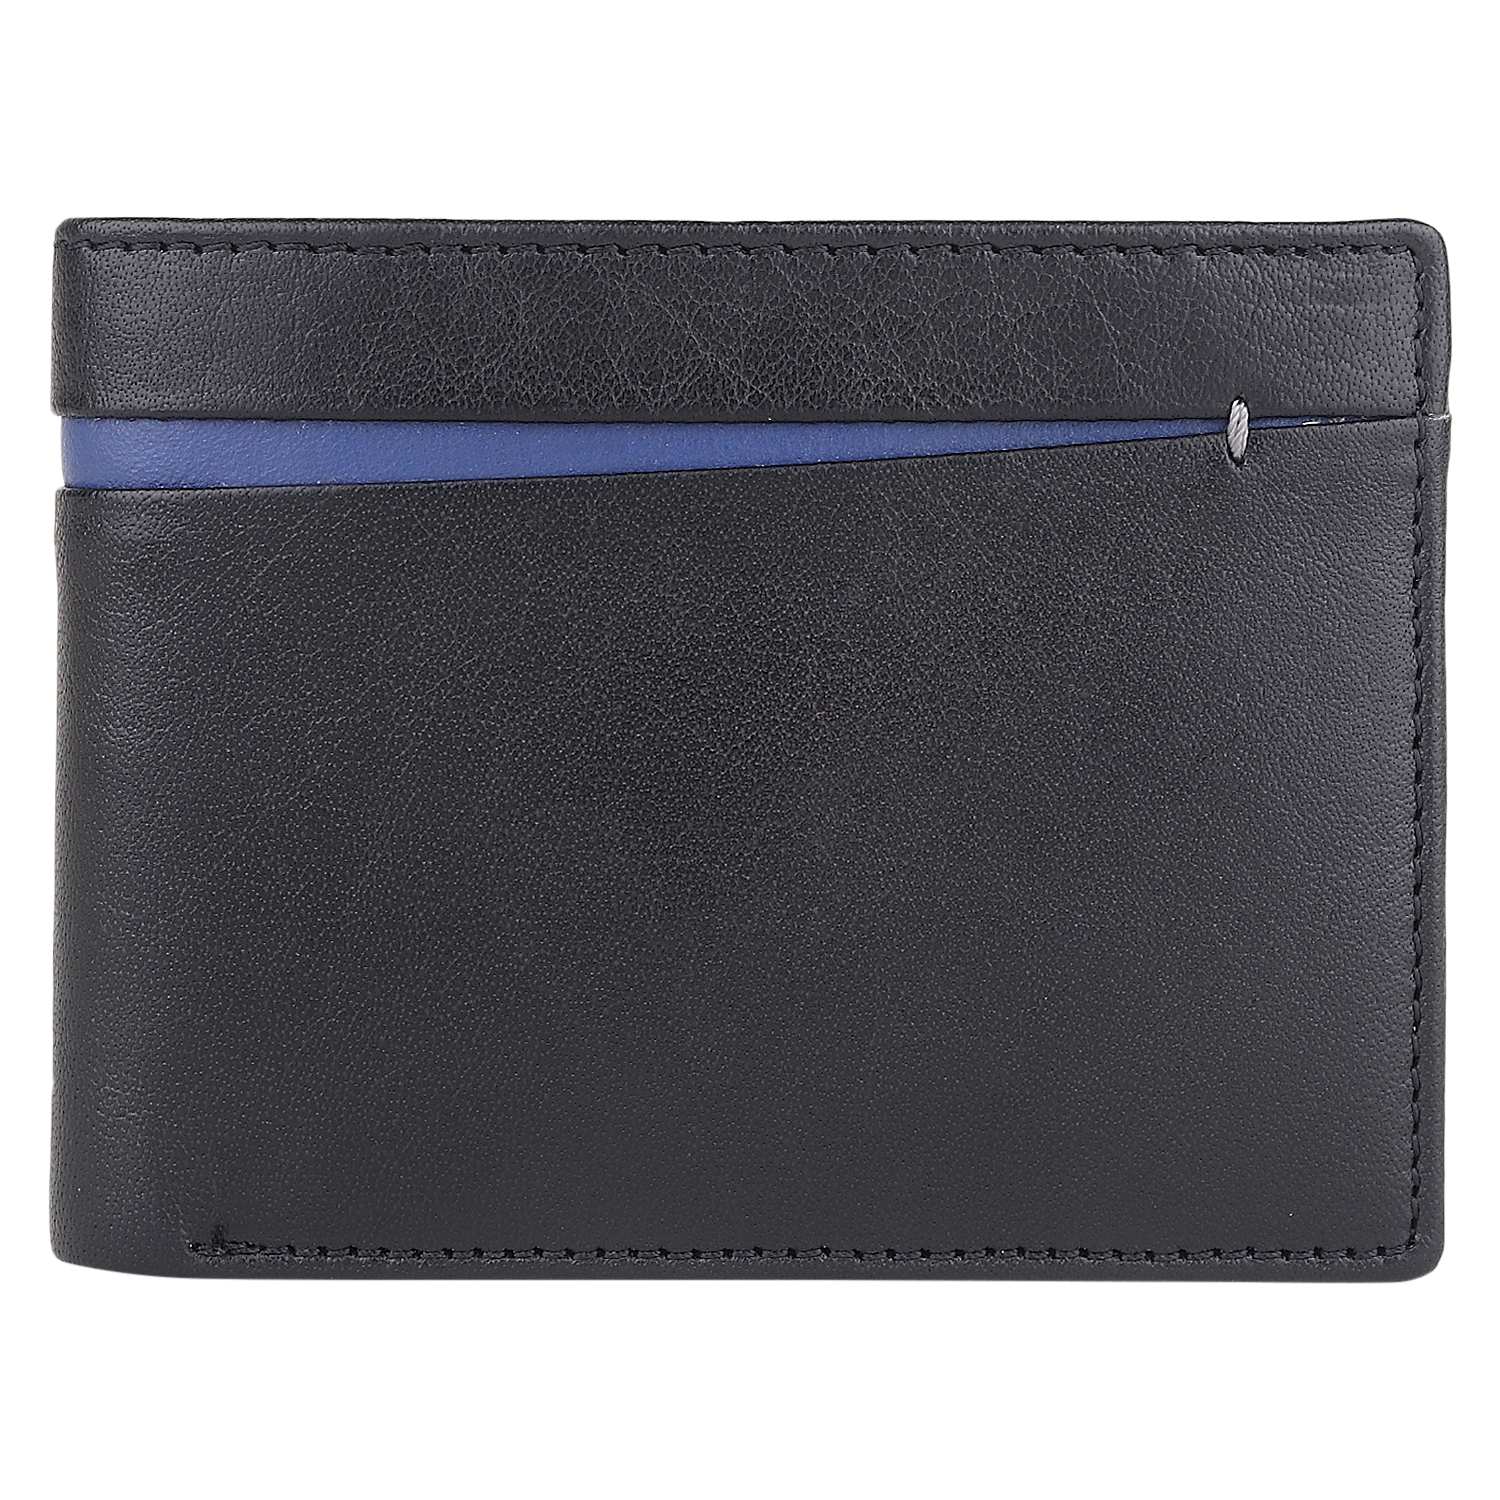 D-Shrunkan leather wallet